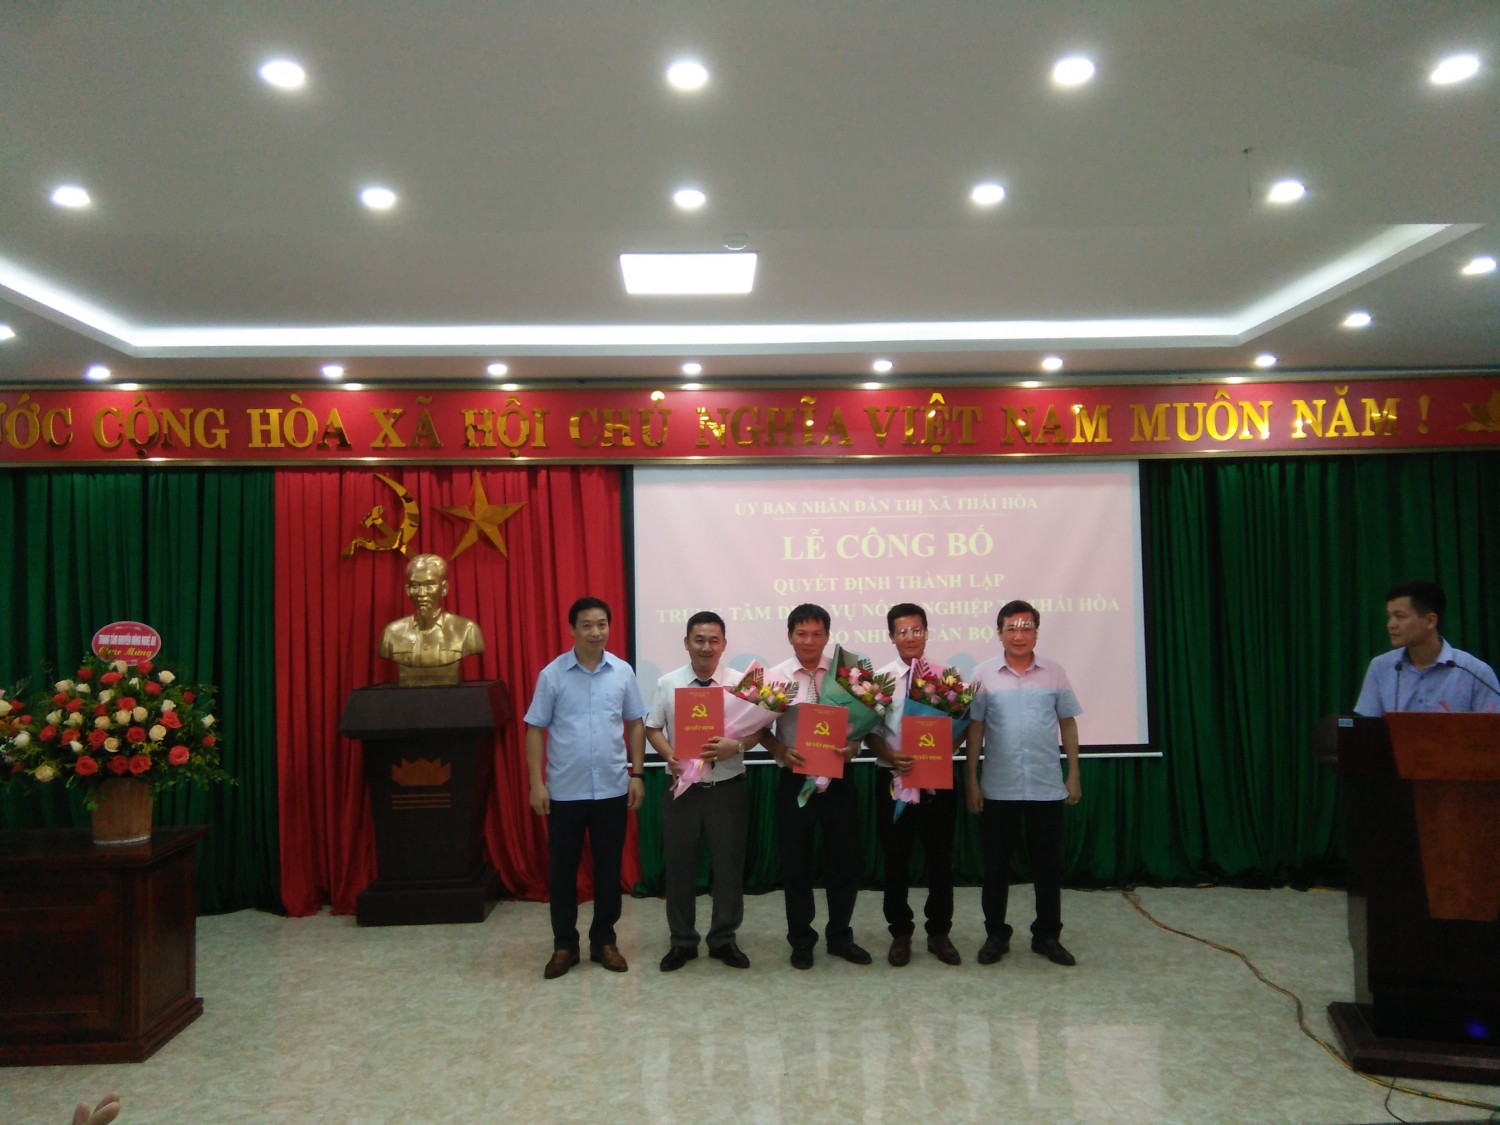 UBND Thị xã Thái Hòa: Công bố thành lập Trung tâm Dịch vụ nông nghiệp Thị xã Thái Hòa.